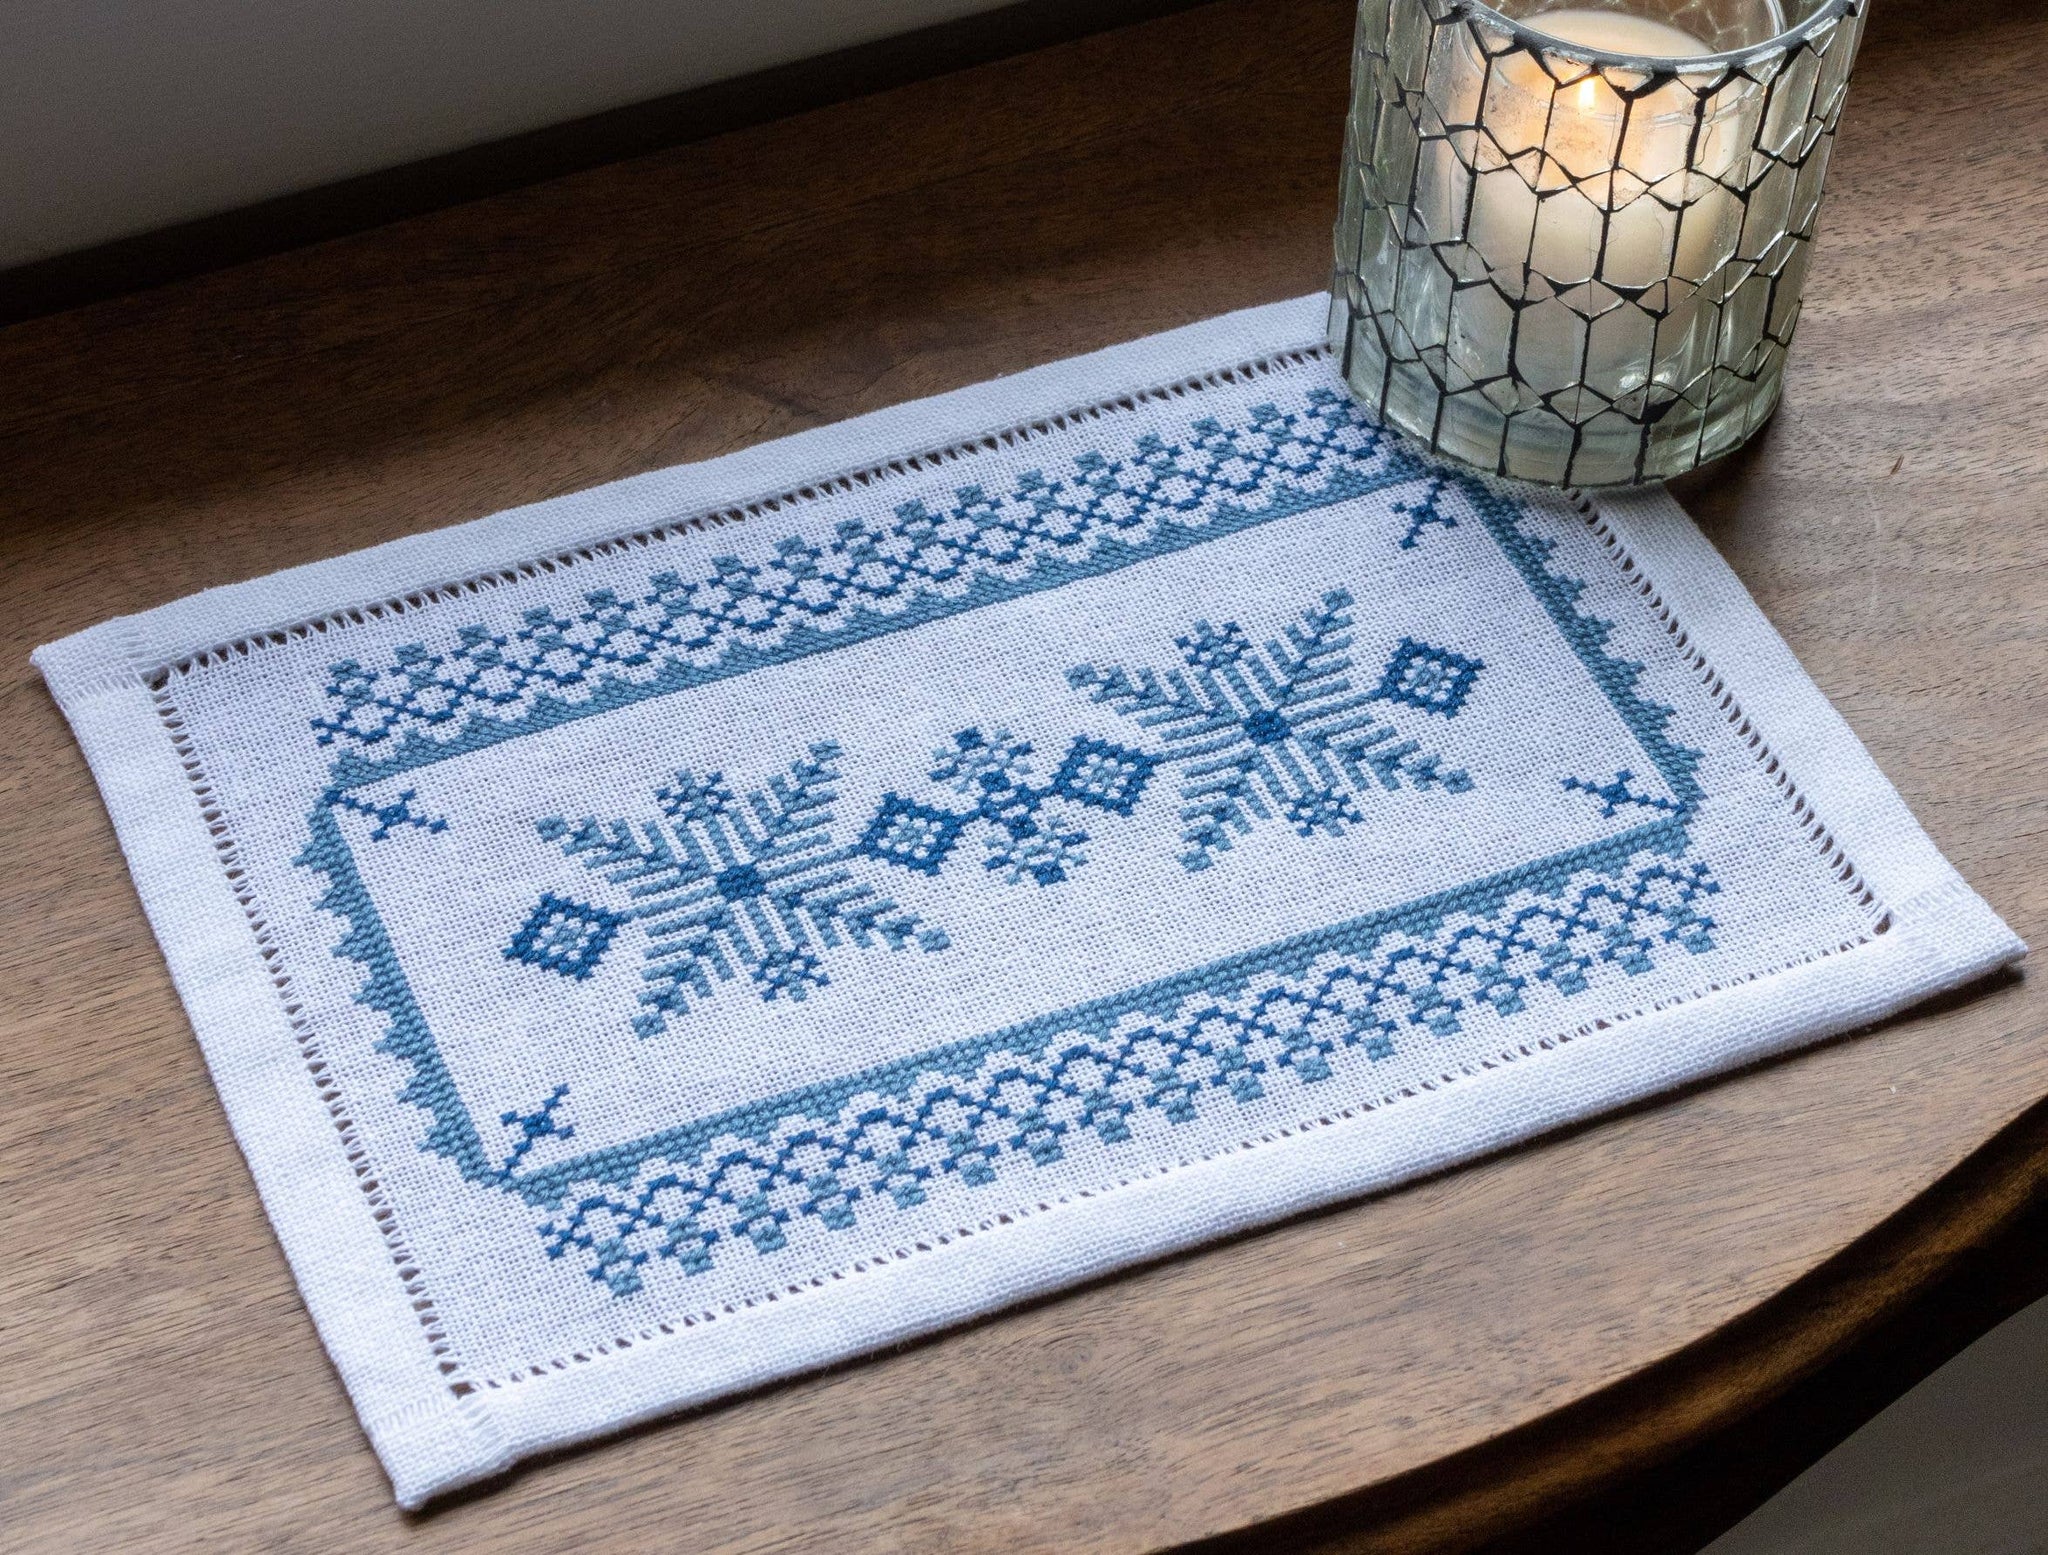 Scandinavian Stars BitKit - Avlea Folk Embroidery - Cross Stitch Kit